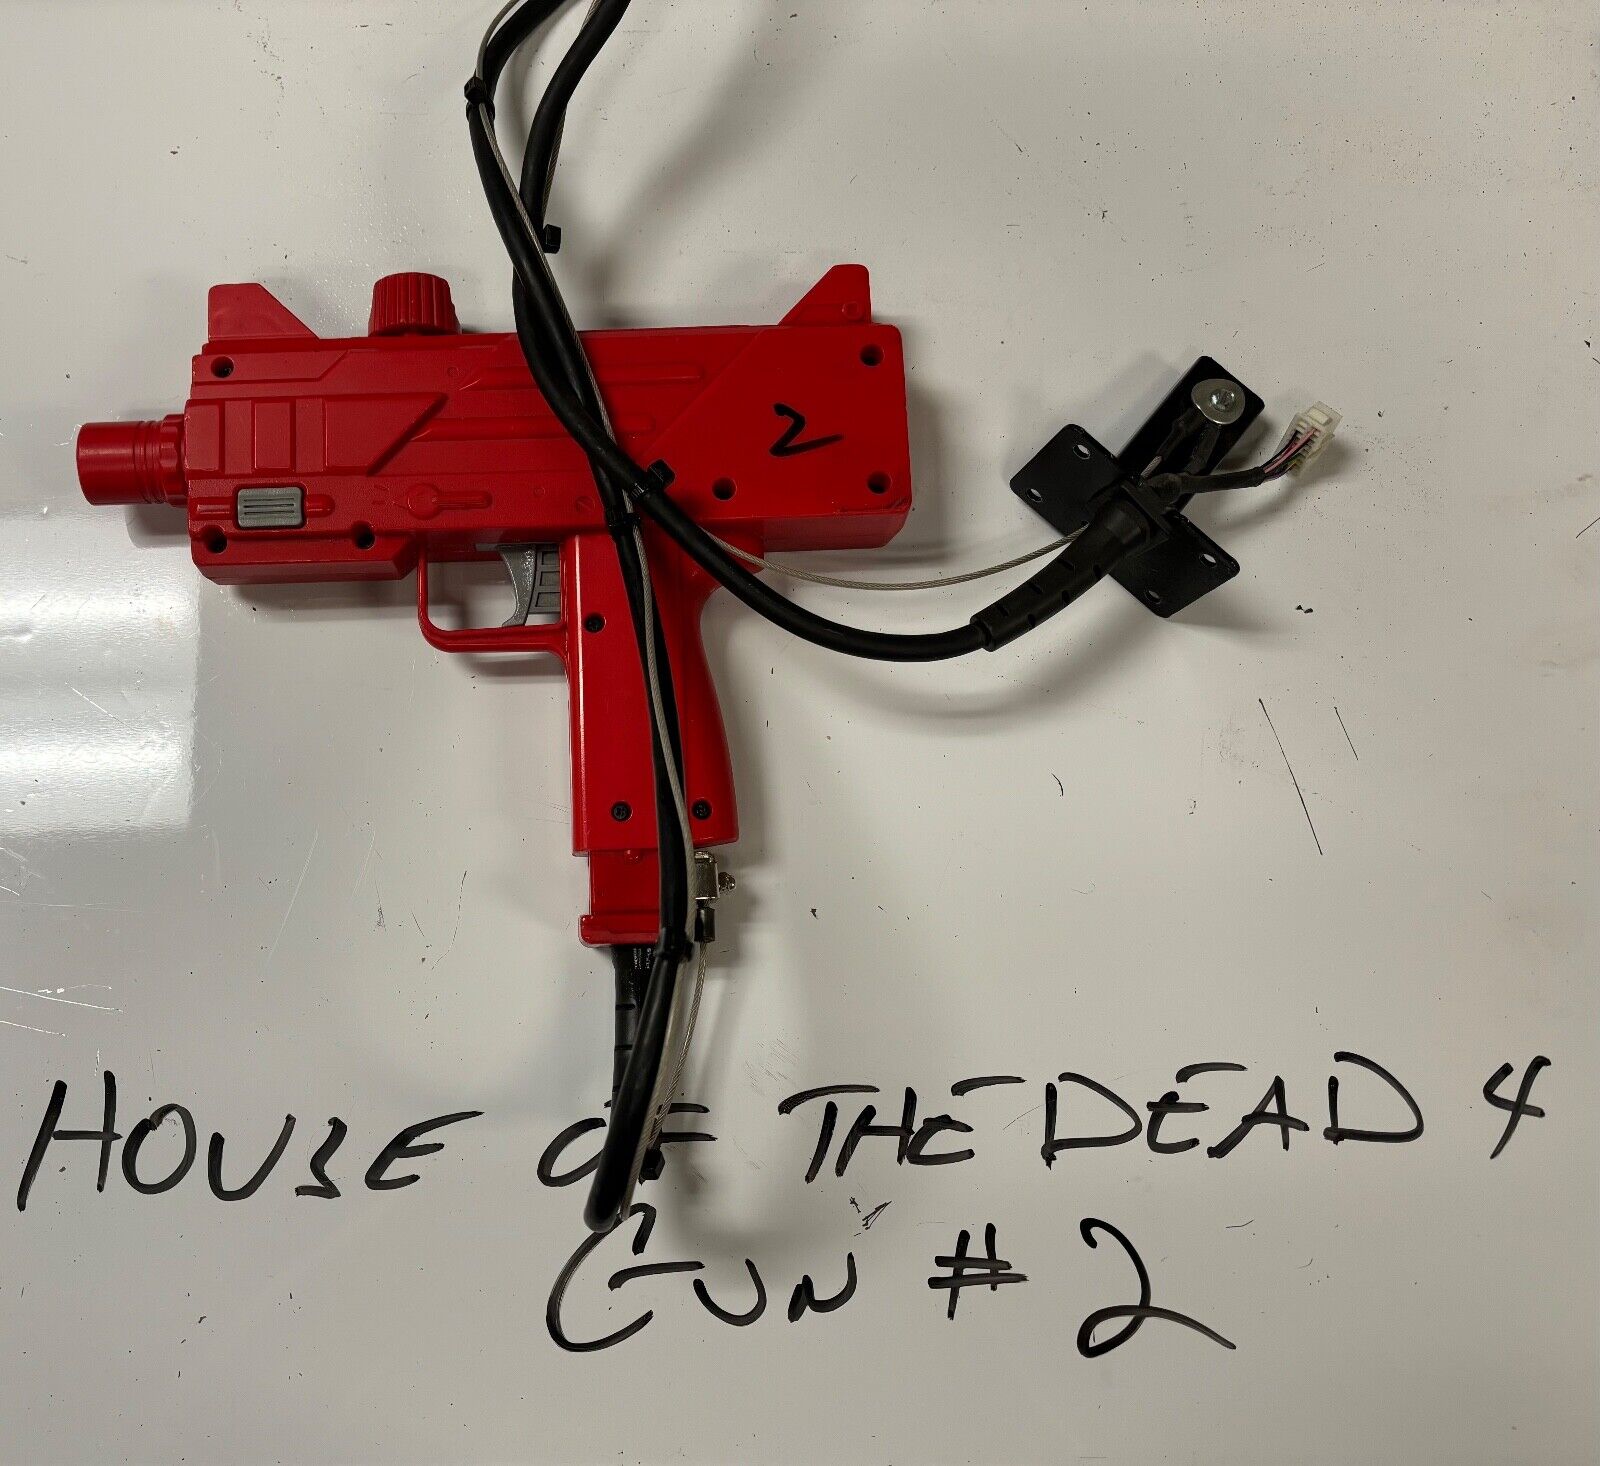 Sega The house of the dead 4 gun #2